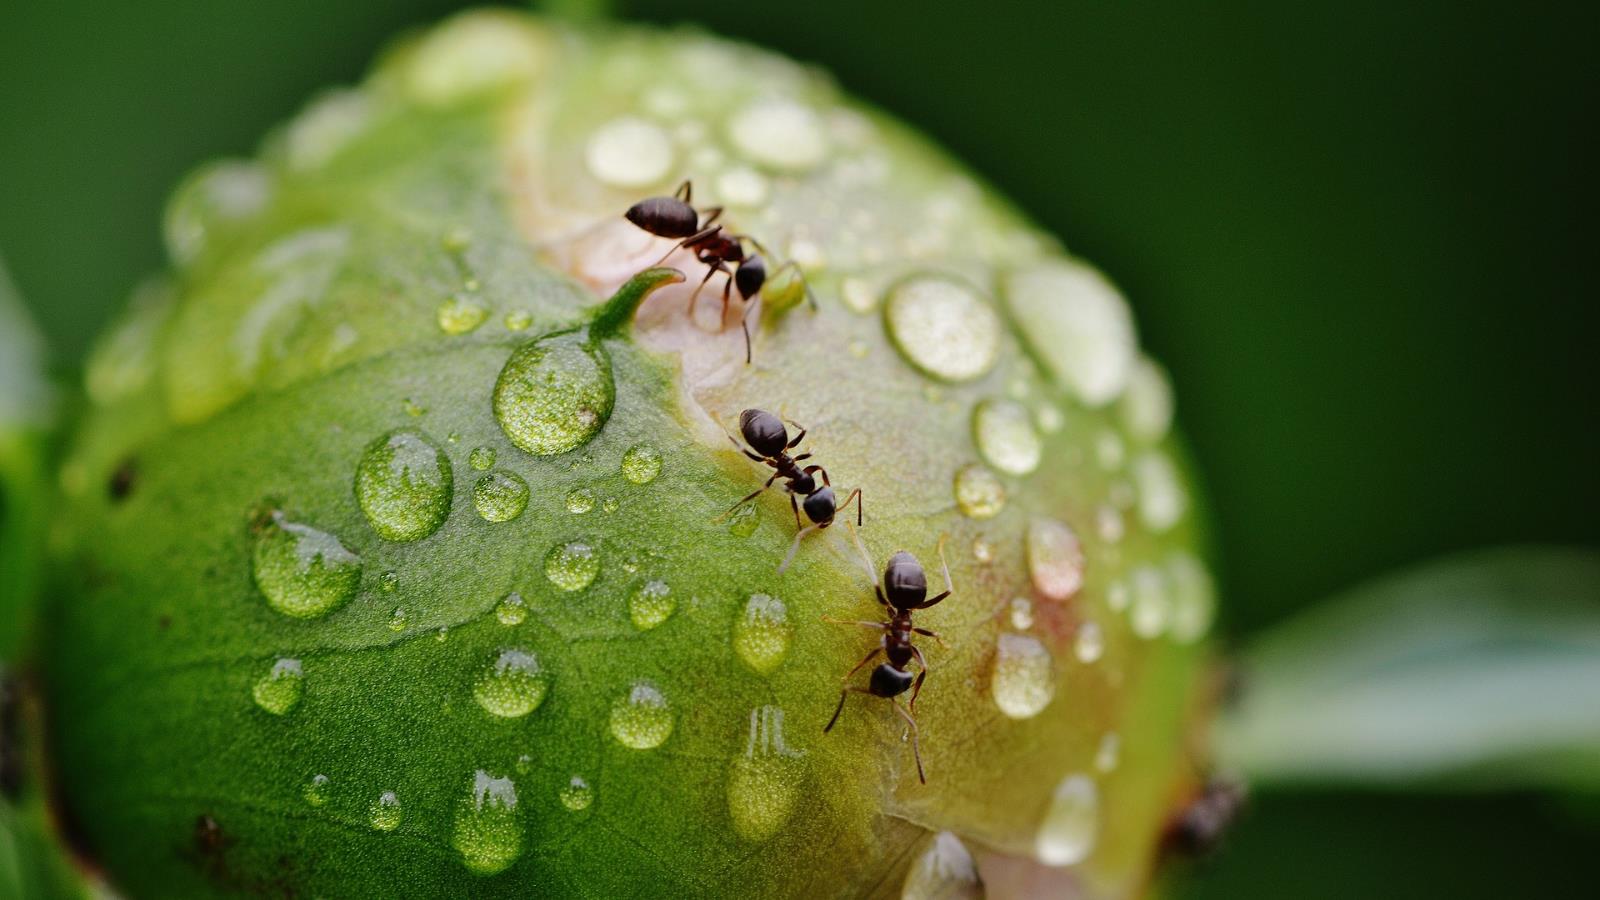 ‪وجود النمل على النباتات يتسبب في تقليل إصابتها بالأمراض بنسبة 59%‬ (بيكسابي)